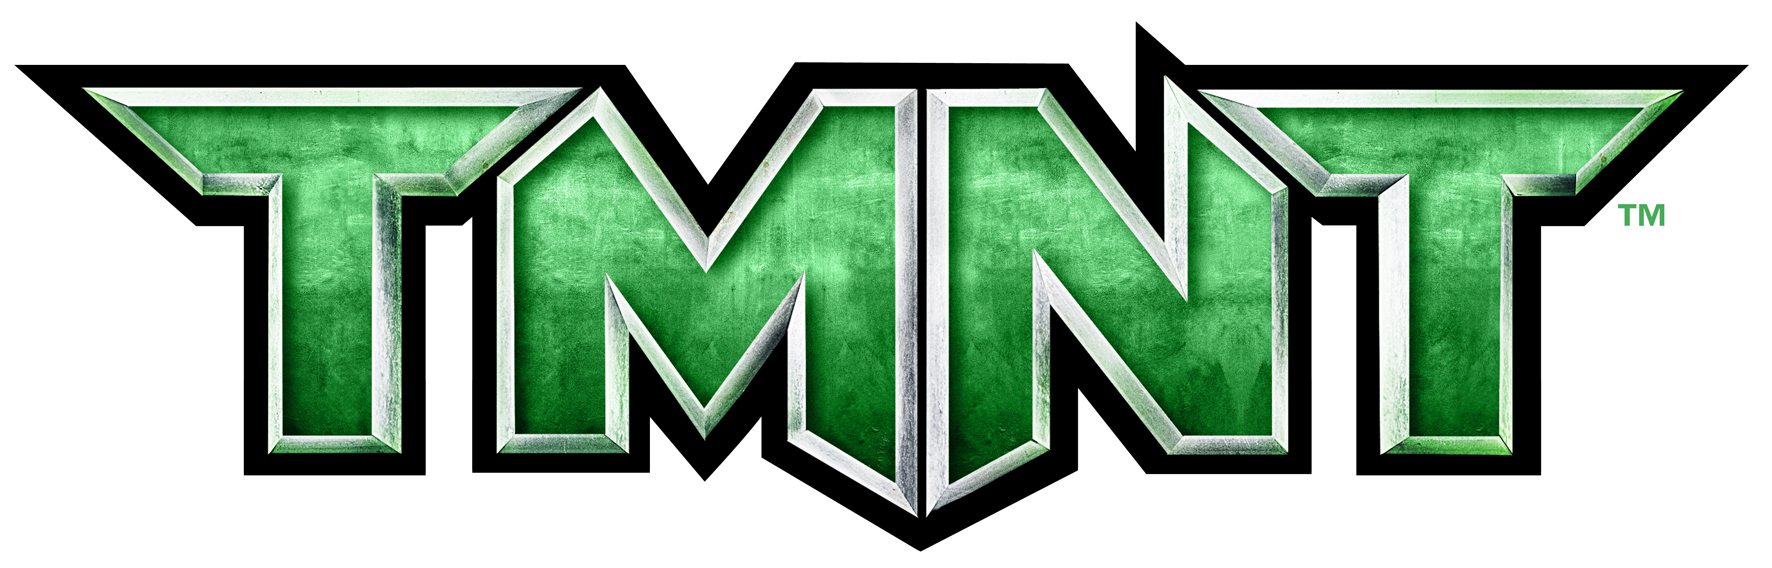 Teenage Mutant Ninja Turtles 2007 Logo